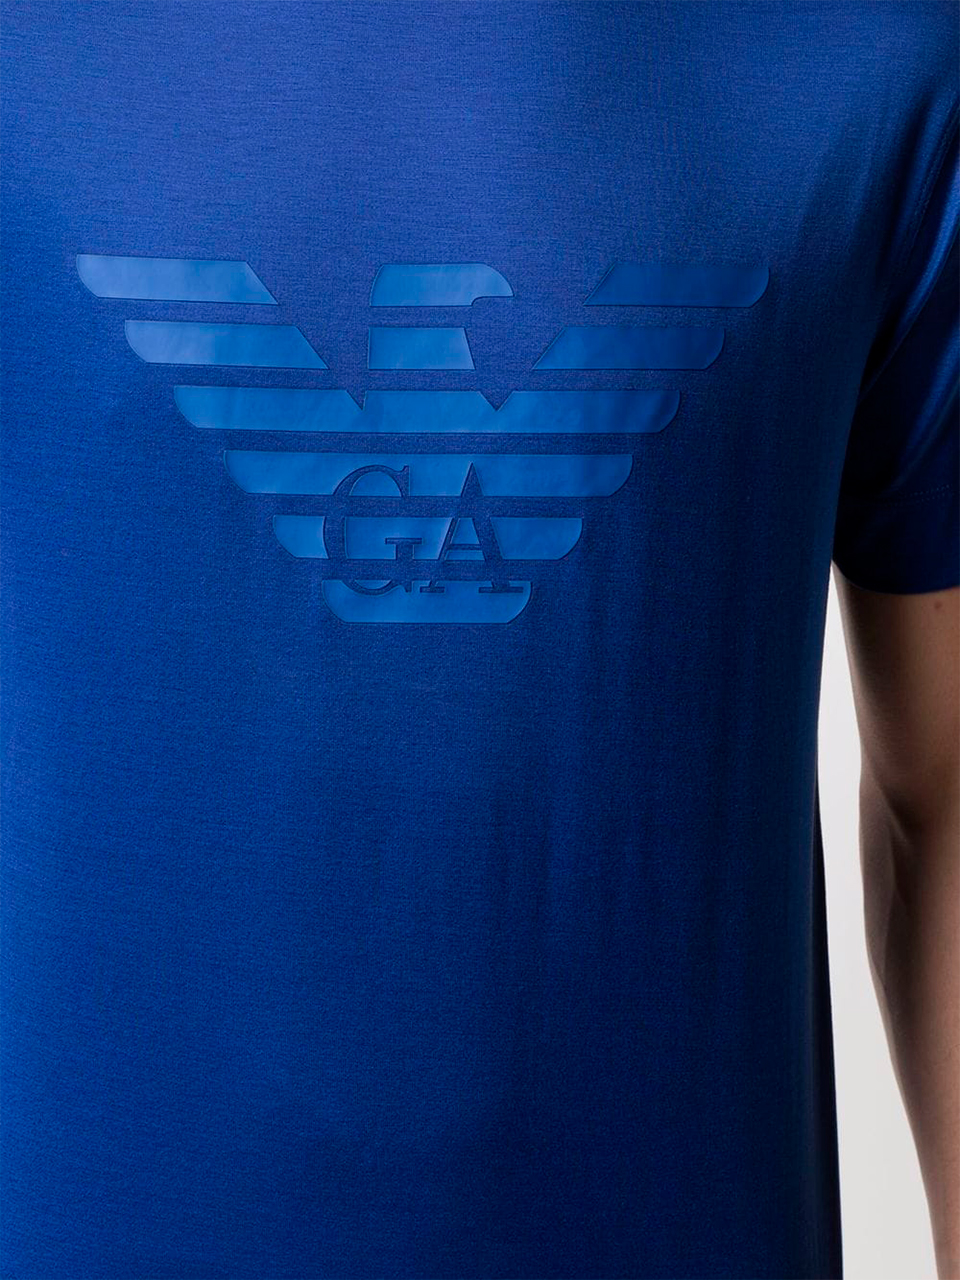 Imagem de: Camiseta Emporio Armani Azul com Estampa Azul